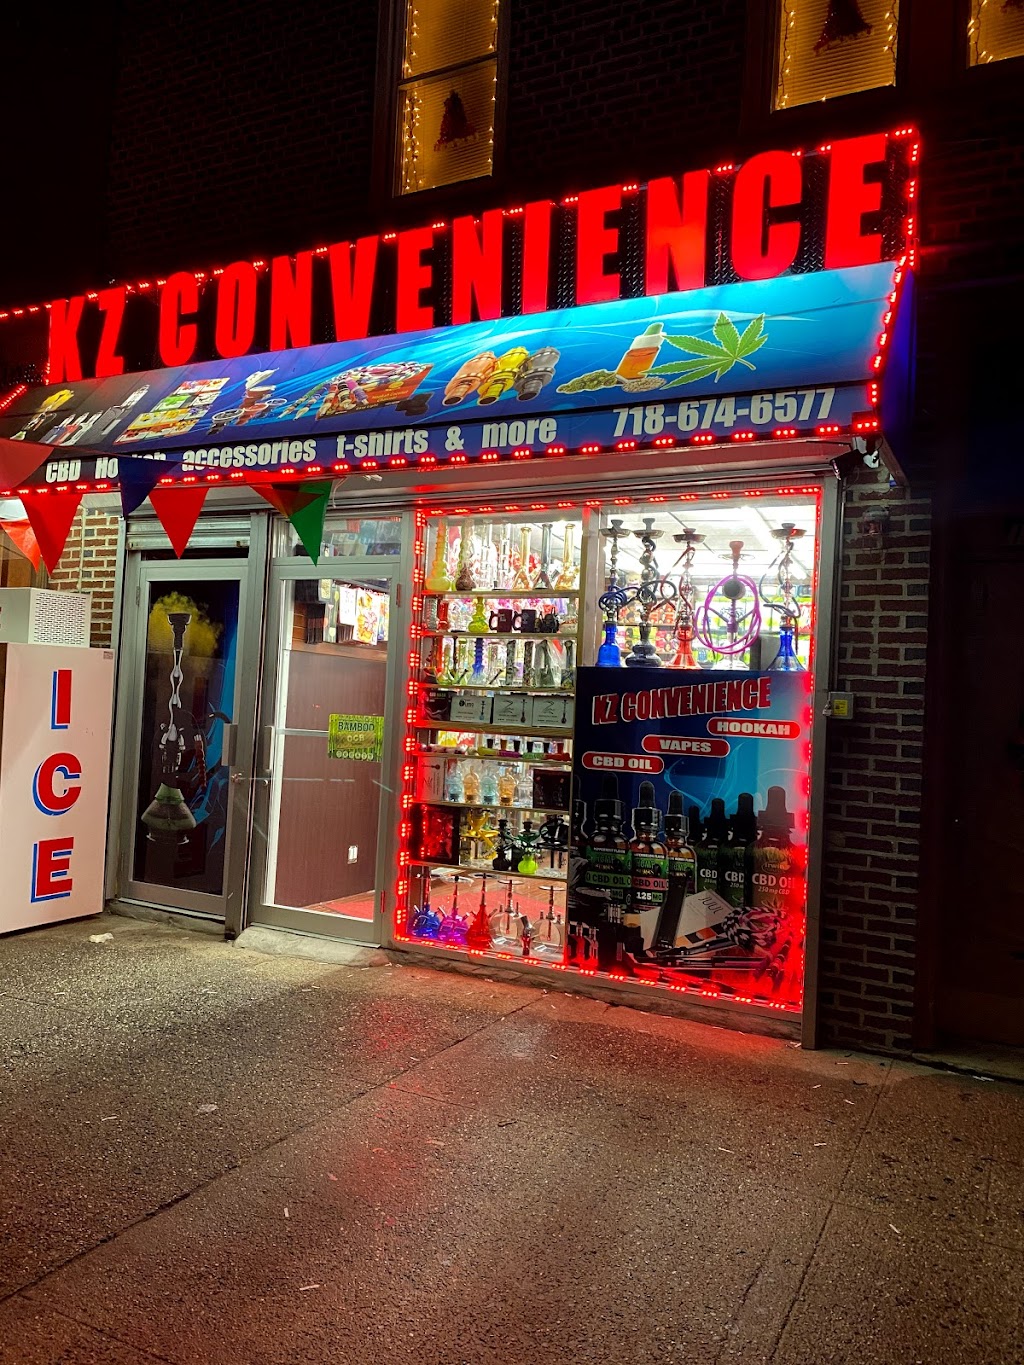 KZ Convenient store | 11464A Merrick Blvd, Queens, NY 11434 | Phone: (718) 674-6577